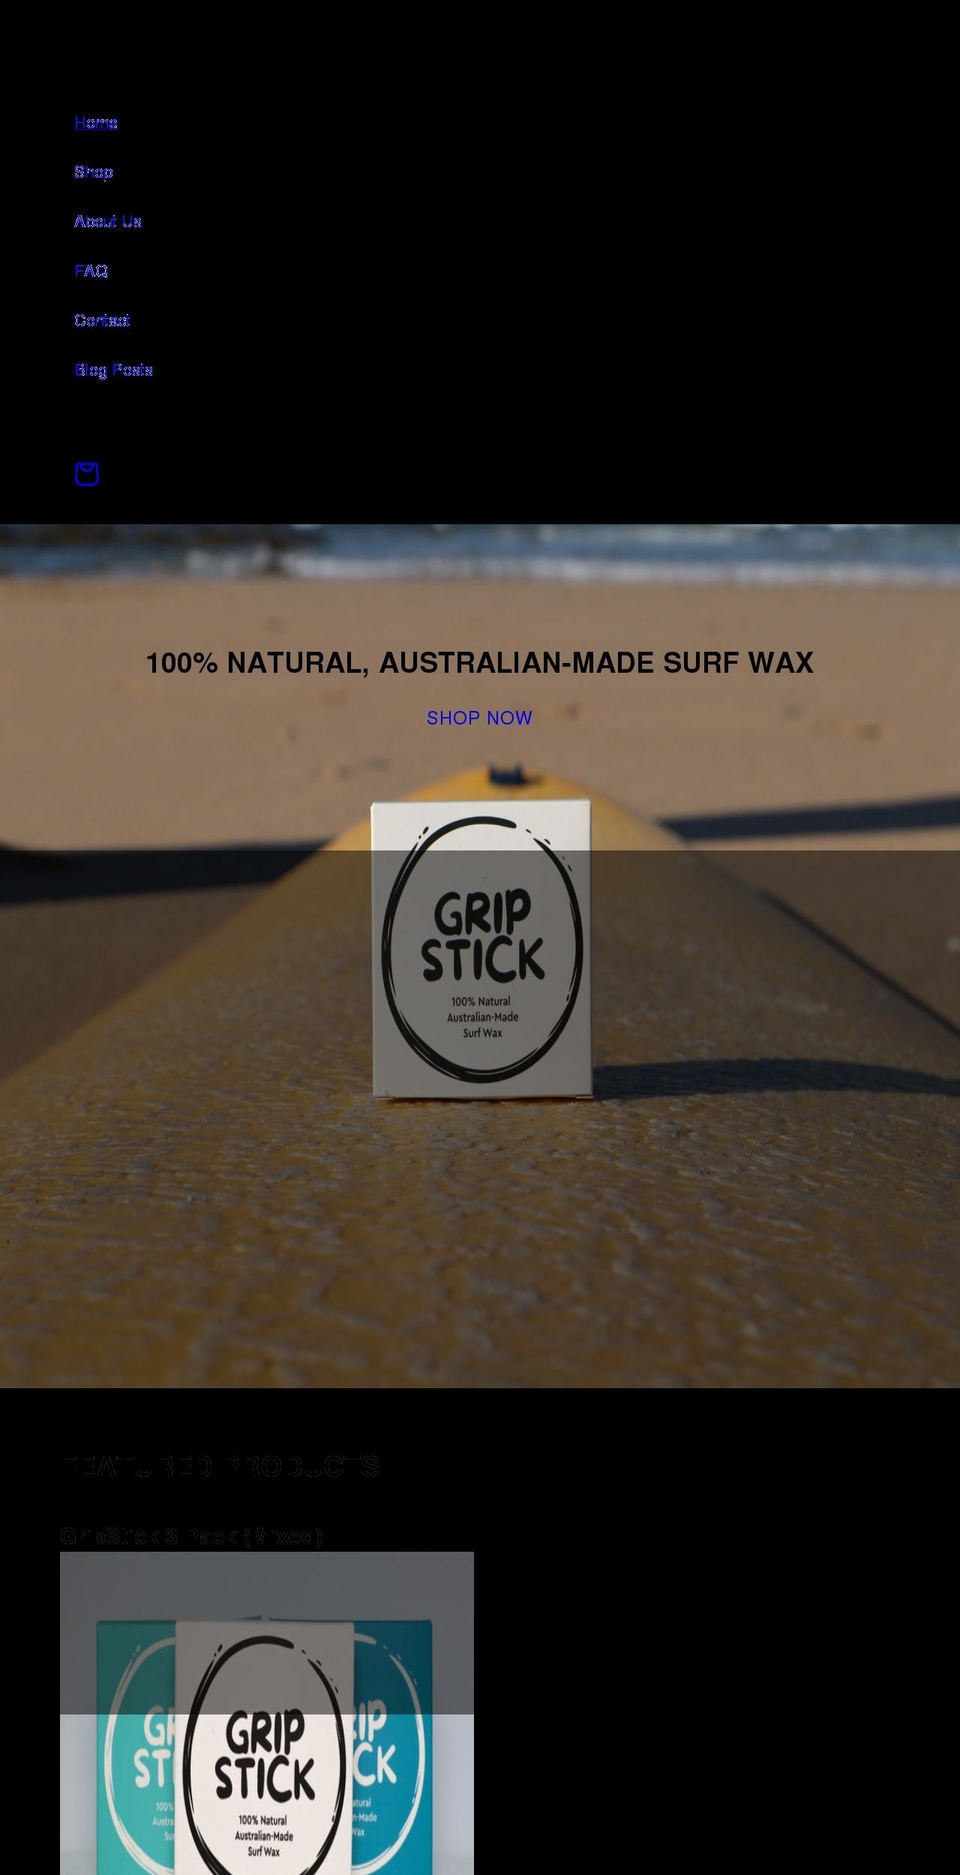 gripstick.com.au shopify website screenshot